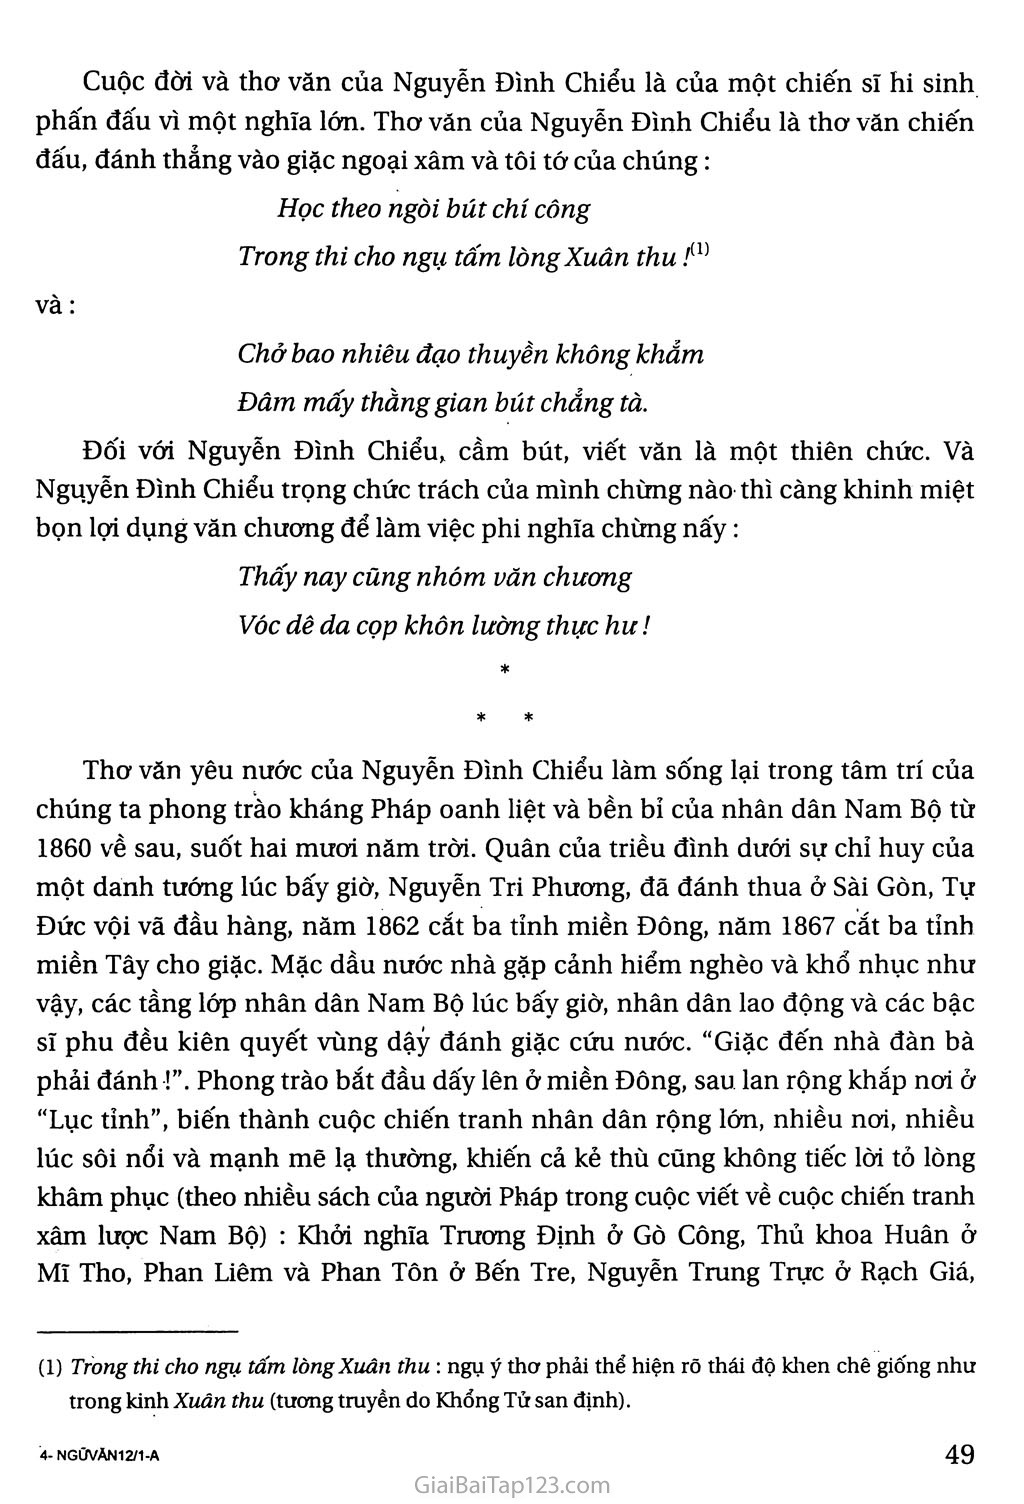 Nguyễn Đình Chiểu, ngôi sao sáng trong văn nghệ của dân tộc trang 3